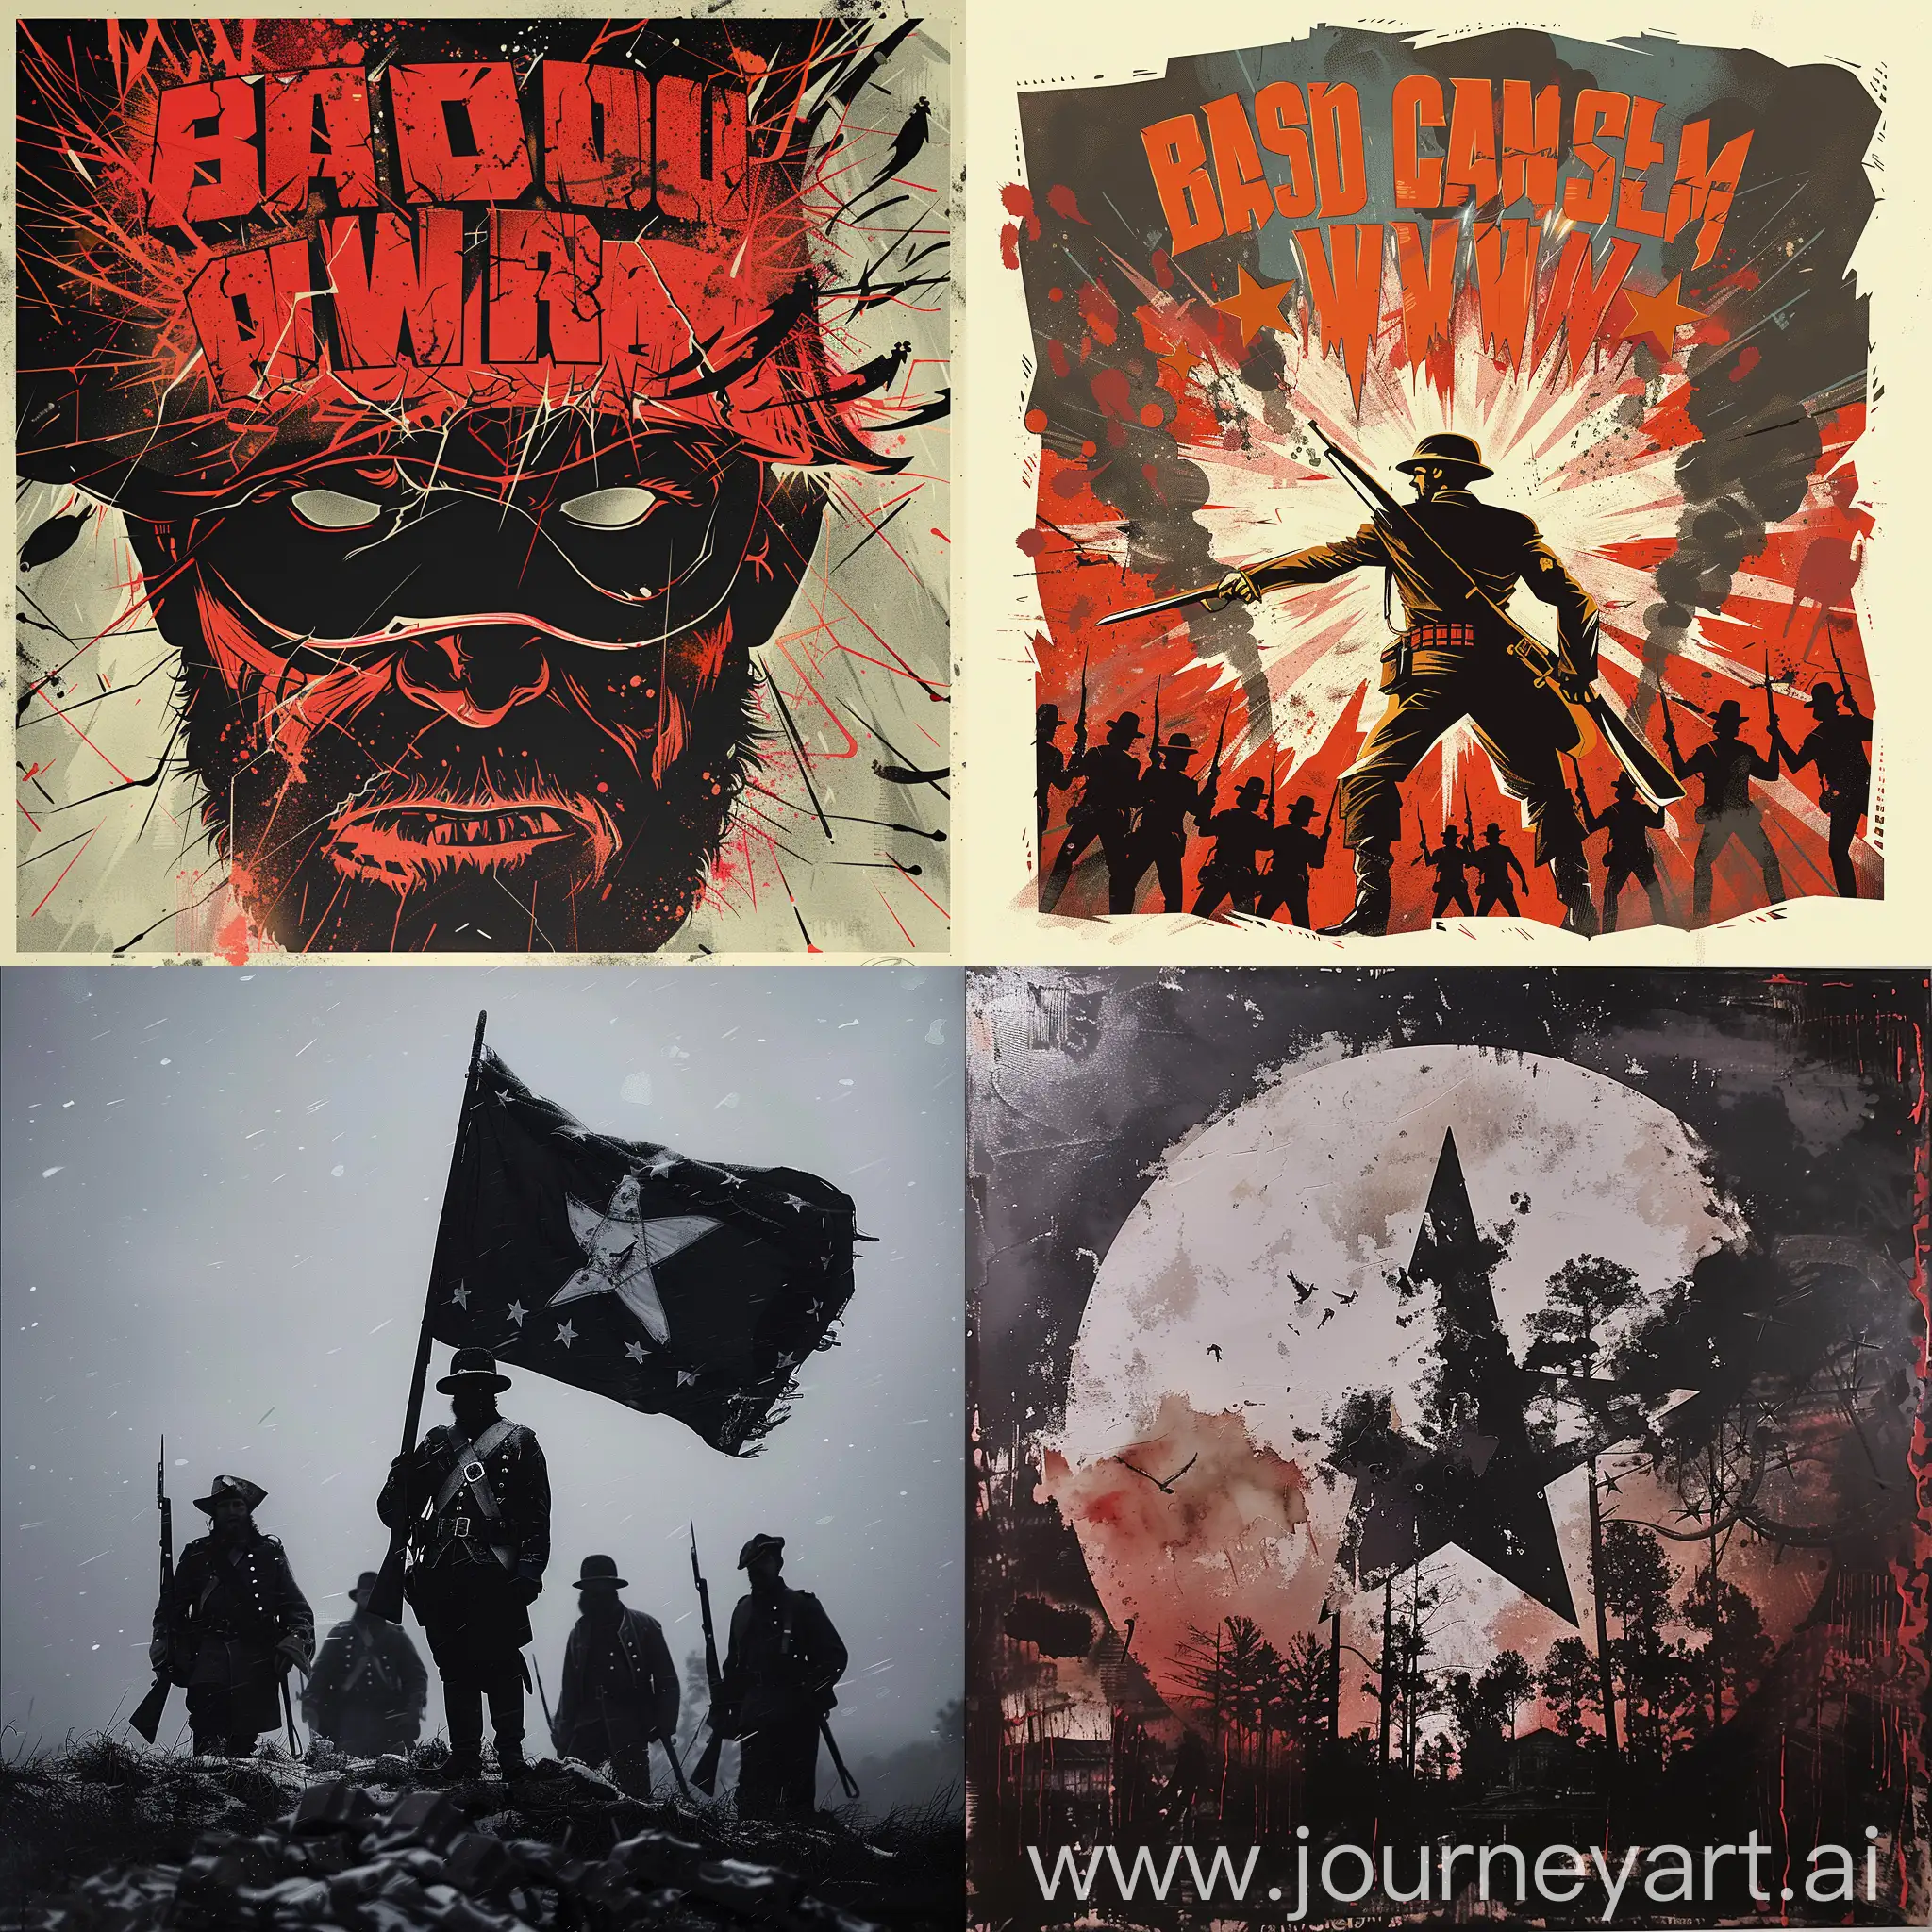 Intense-Civil-War-Album-Cover-Art-Featuring-Warriors-in-Battle